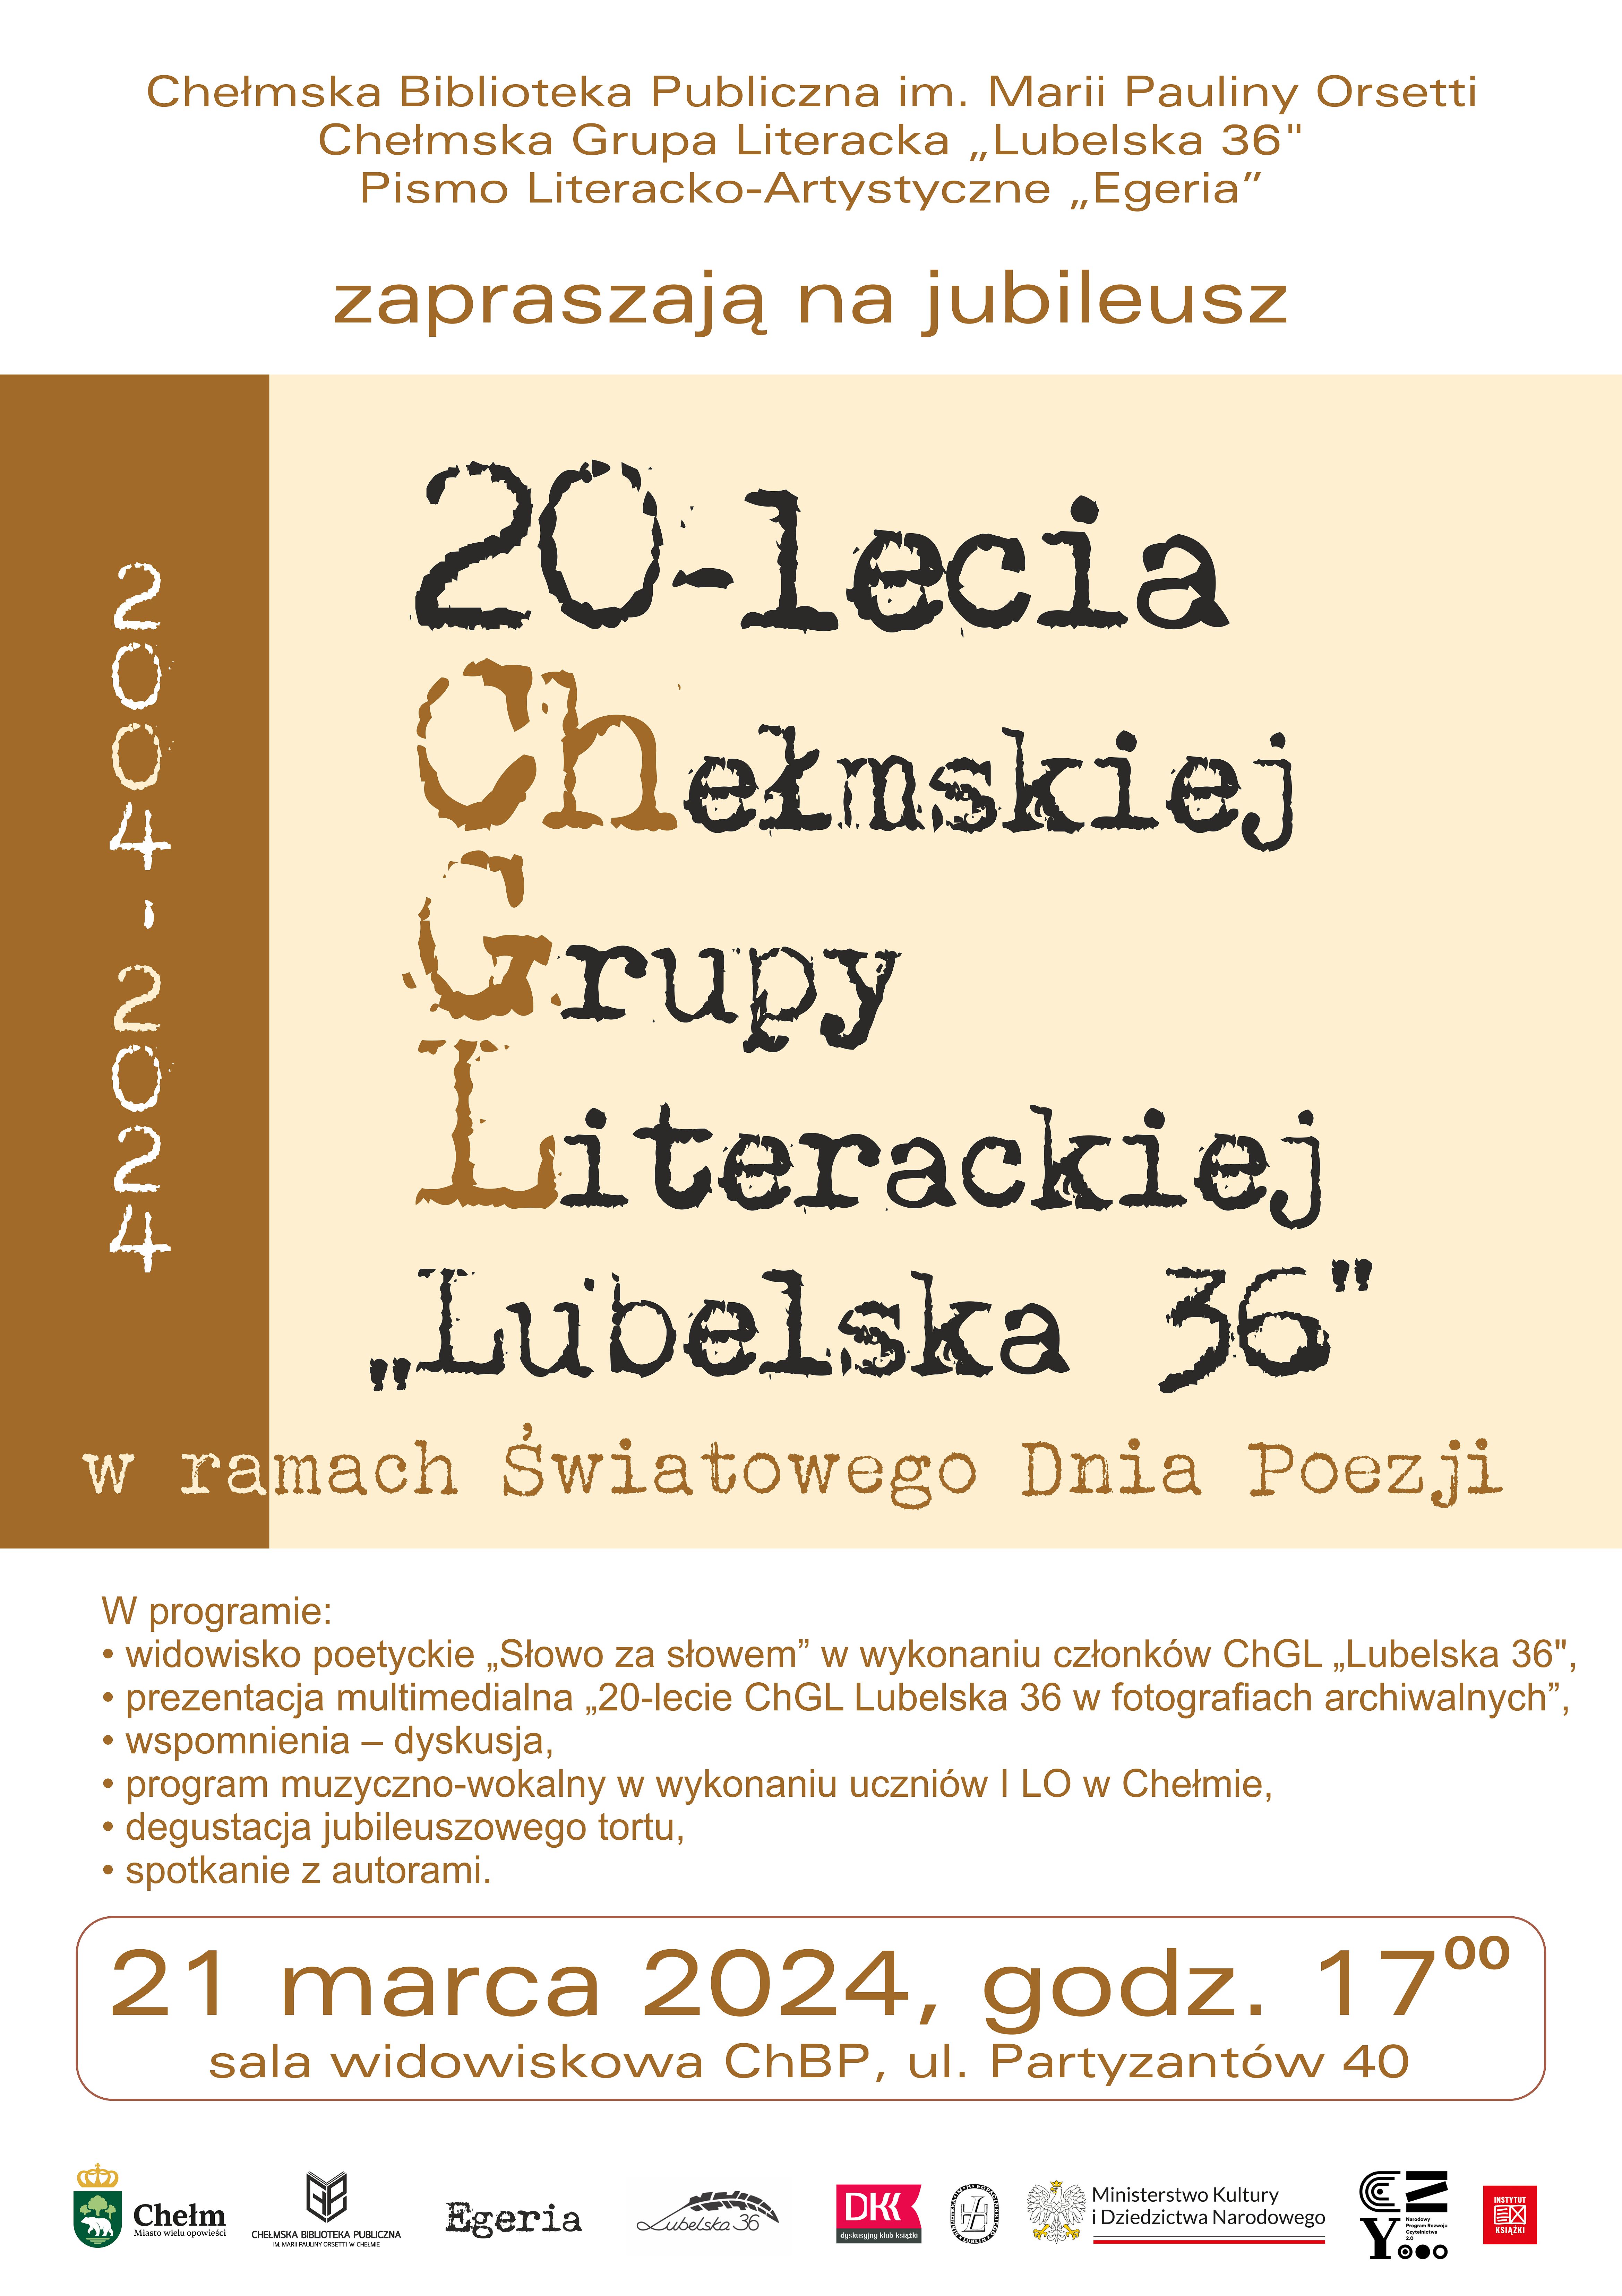 Plakat promujący 20-lecie Chełmskiej Grupy Literackiej "Lubelska 36""